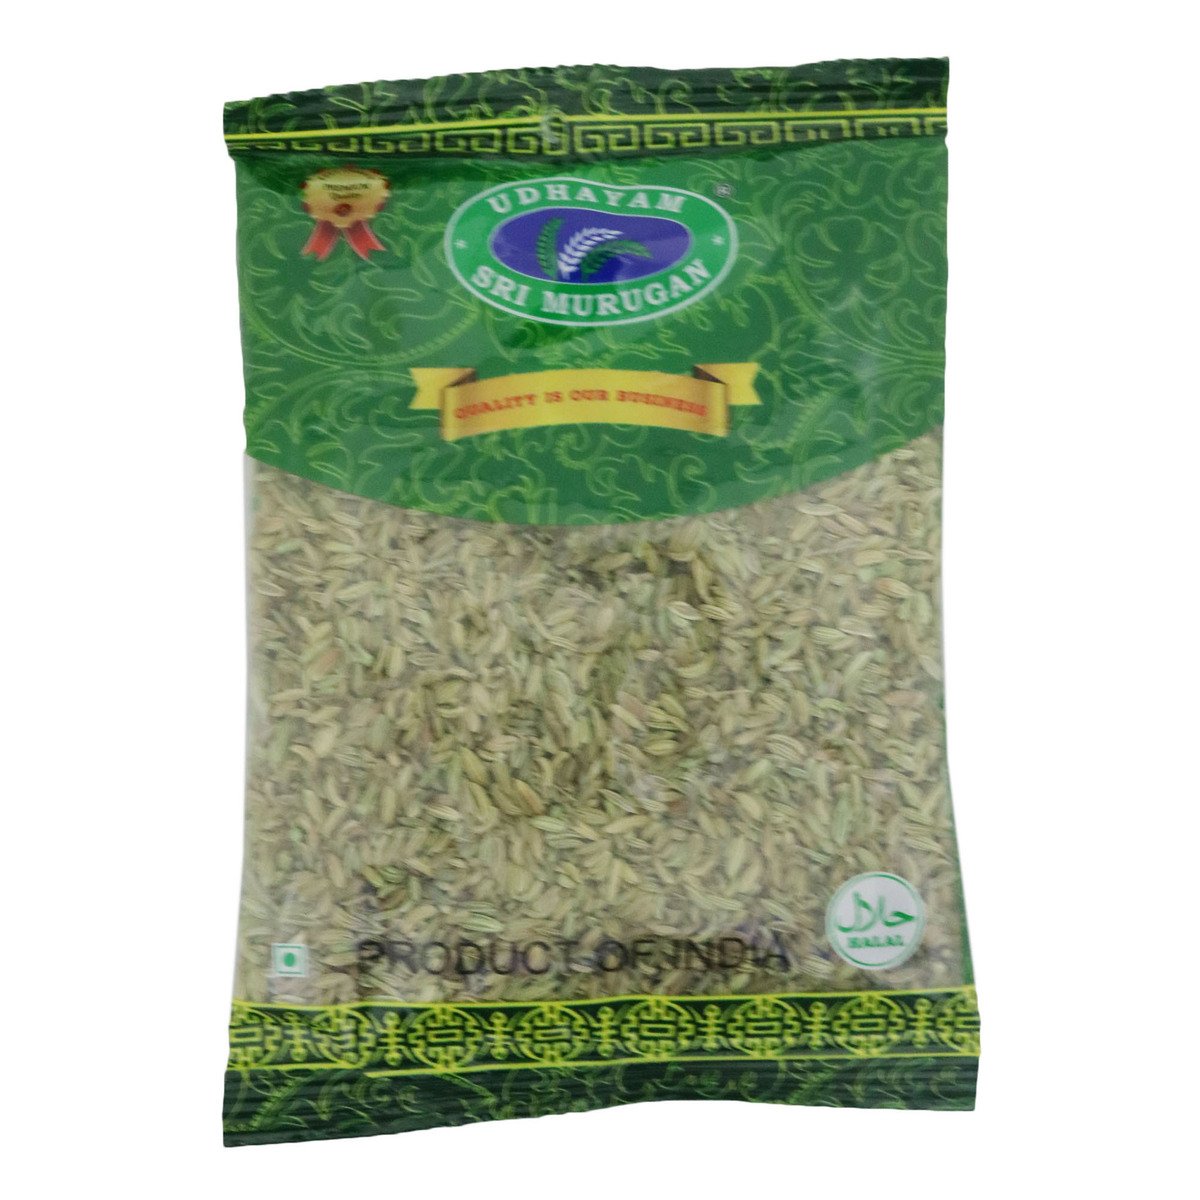 Sri Murugan Fennel (Sombu) Seed 100g